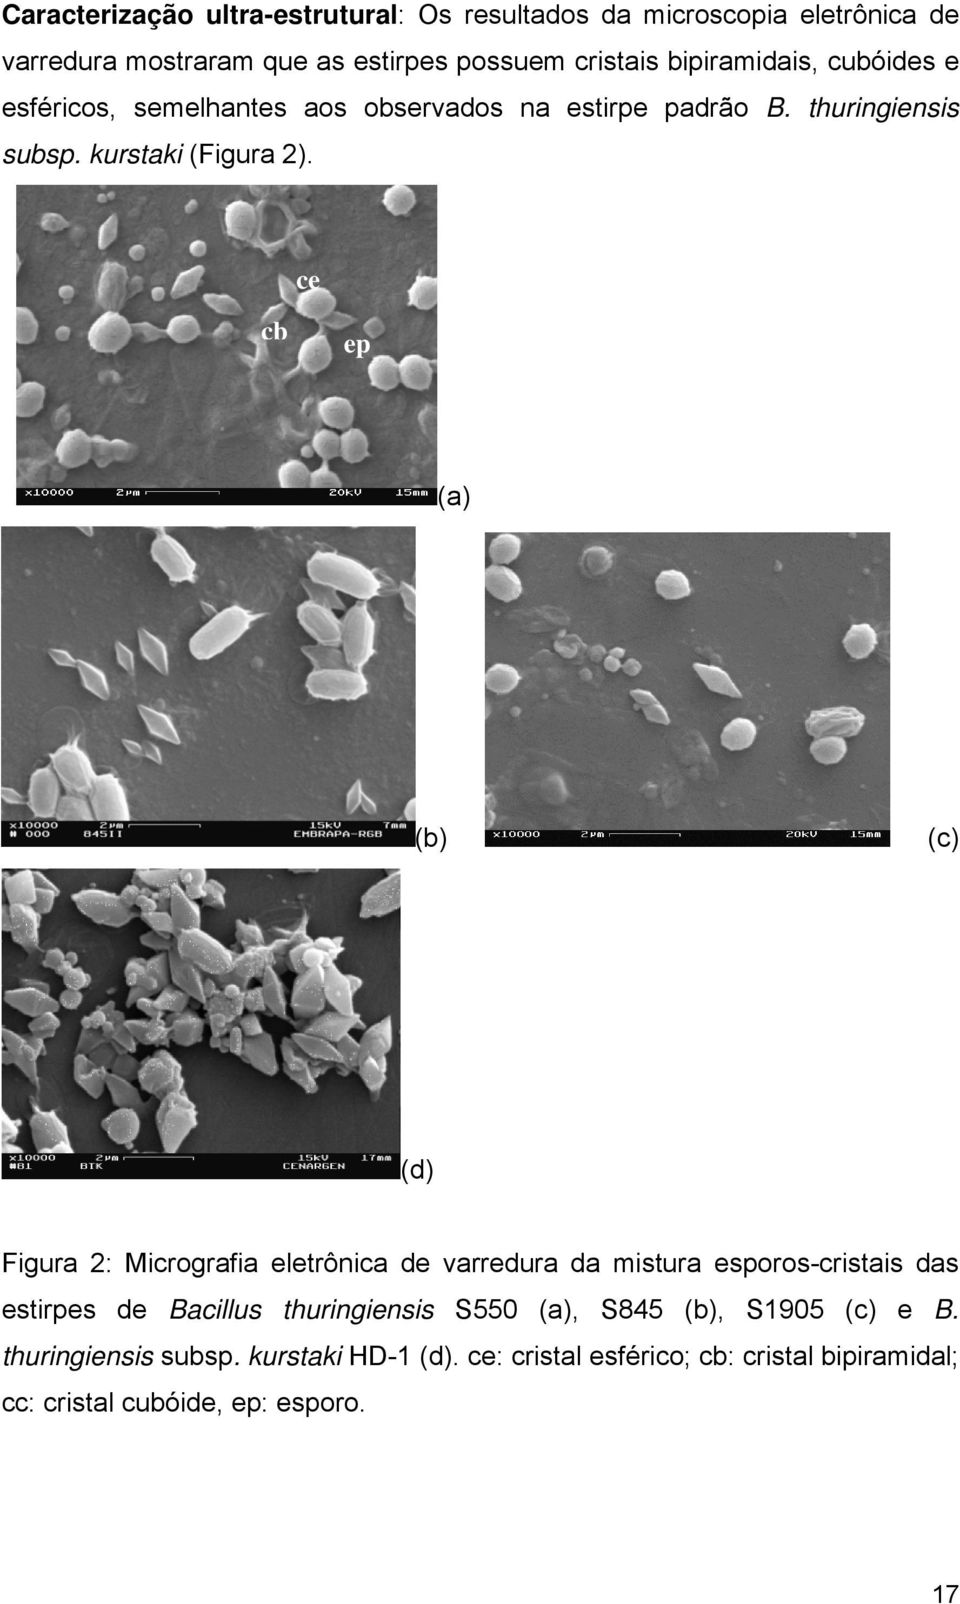 cc ce cb ep cb (a) (b) (c) (d) Figura 2: Micrografia eletrônica de varredura da mistura esporos-cristais das estirpes de Bacillus